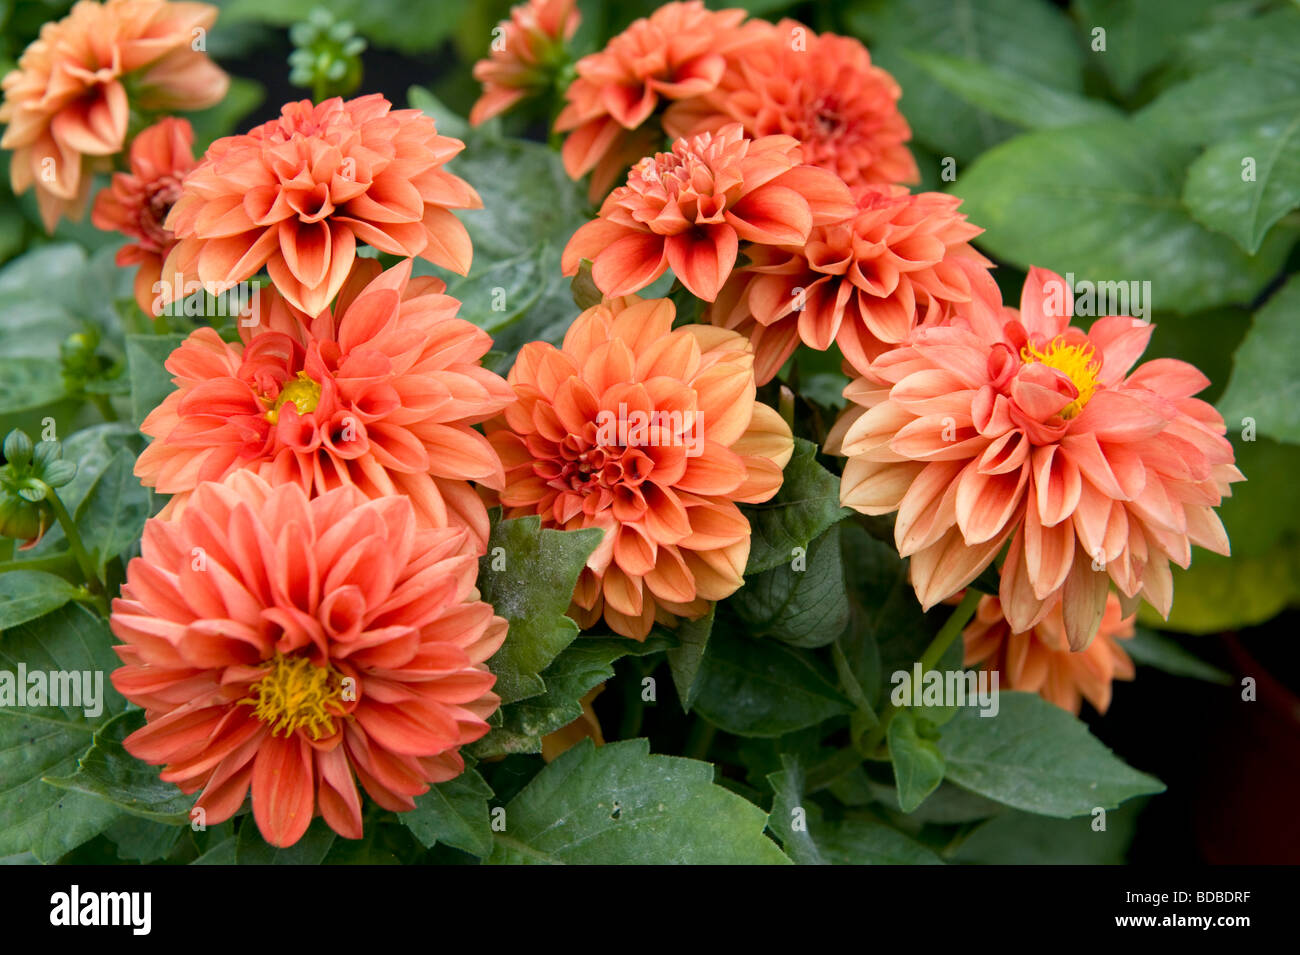 Dwarf miscelati Dahlia nana cespuglioso lettiera dalie numero di colore arancio fiori in piena fioritura Foto Stock